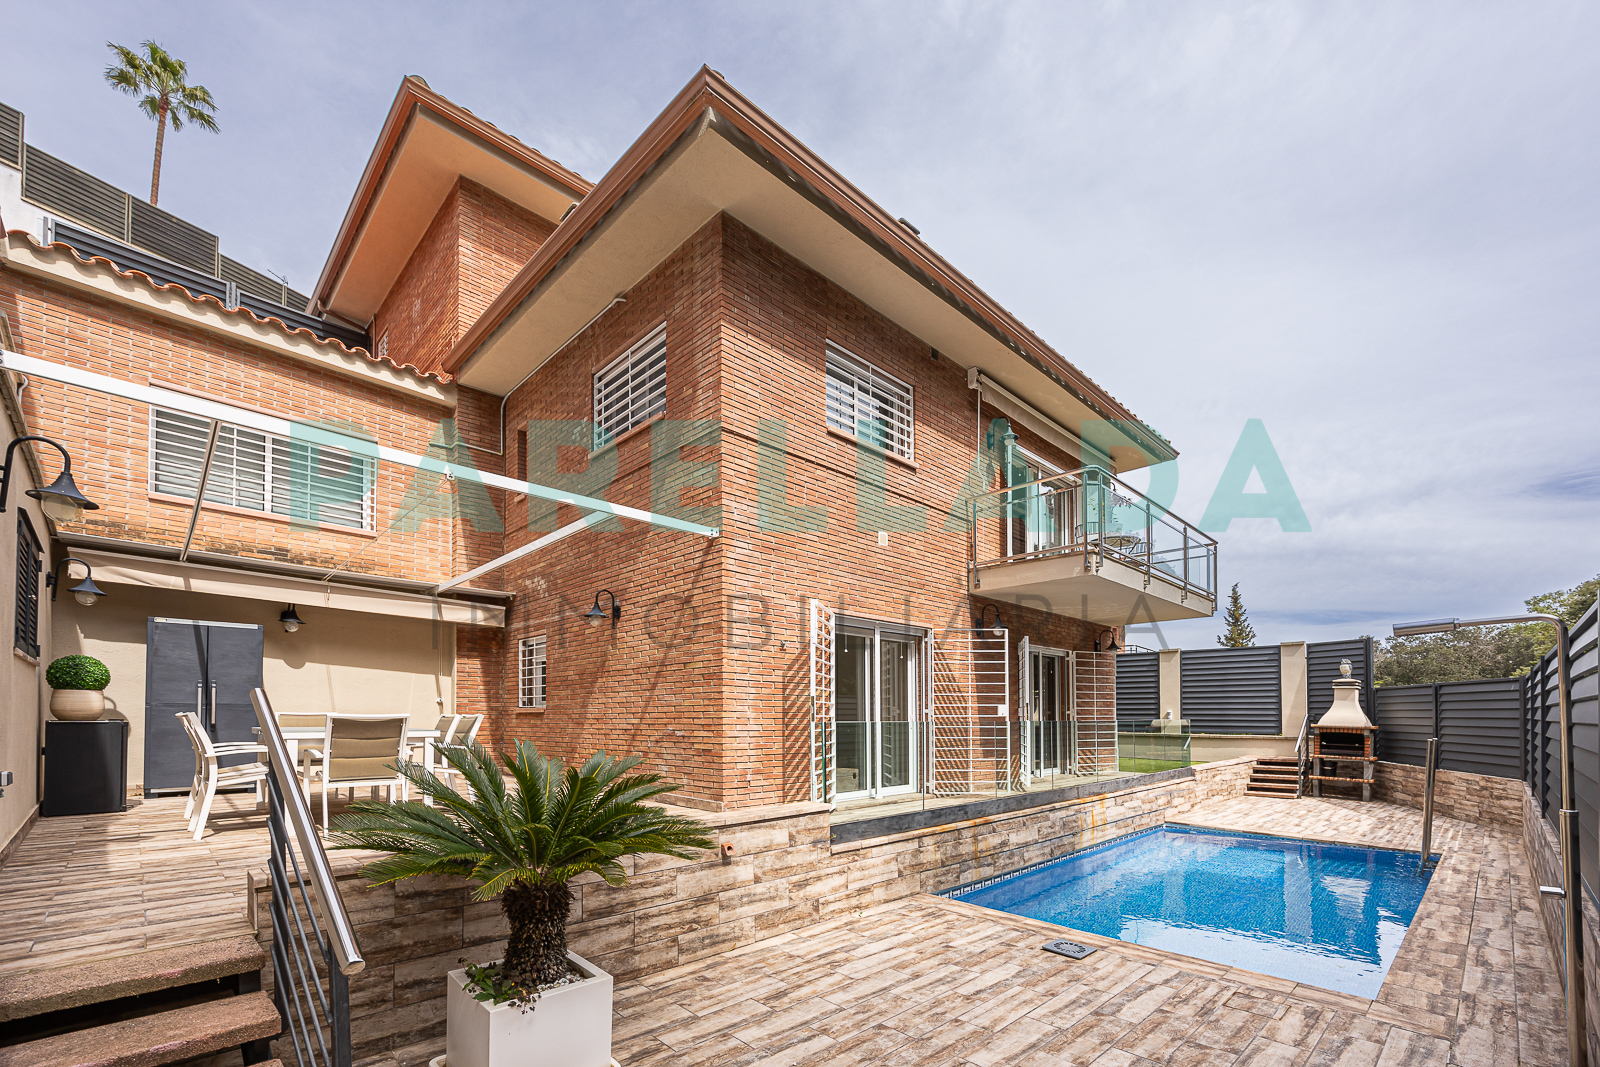 Casa de disseny amb piscina a Alella